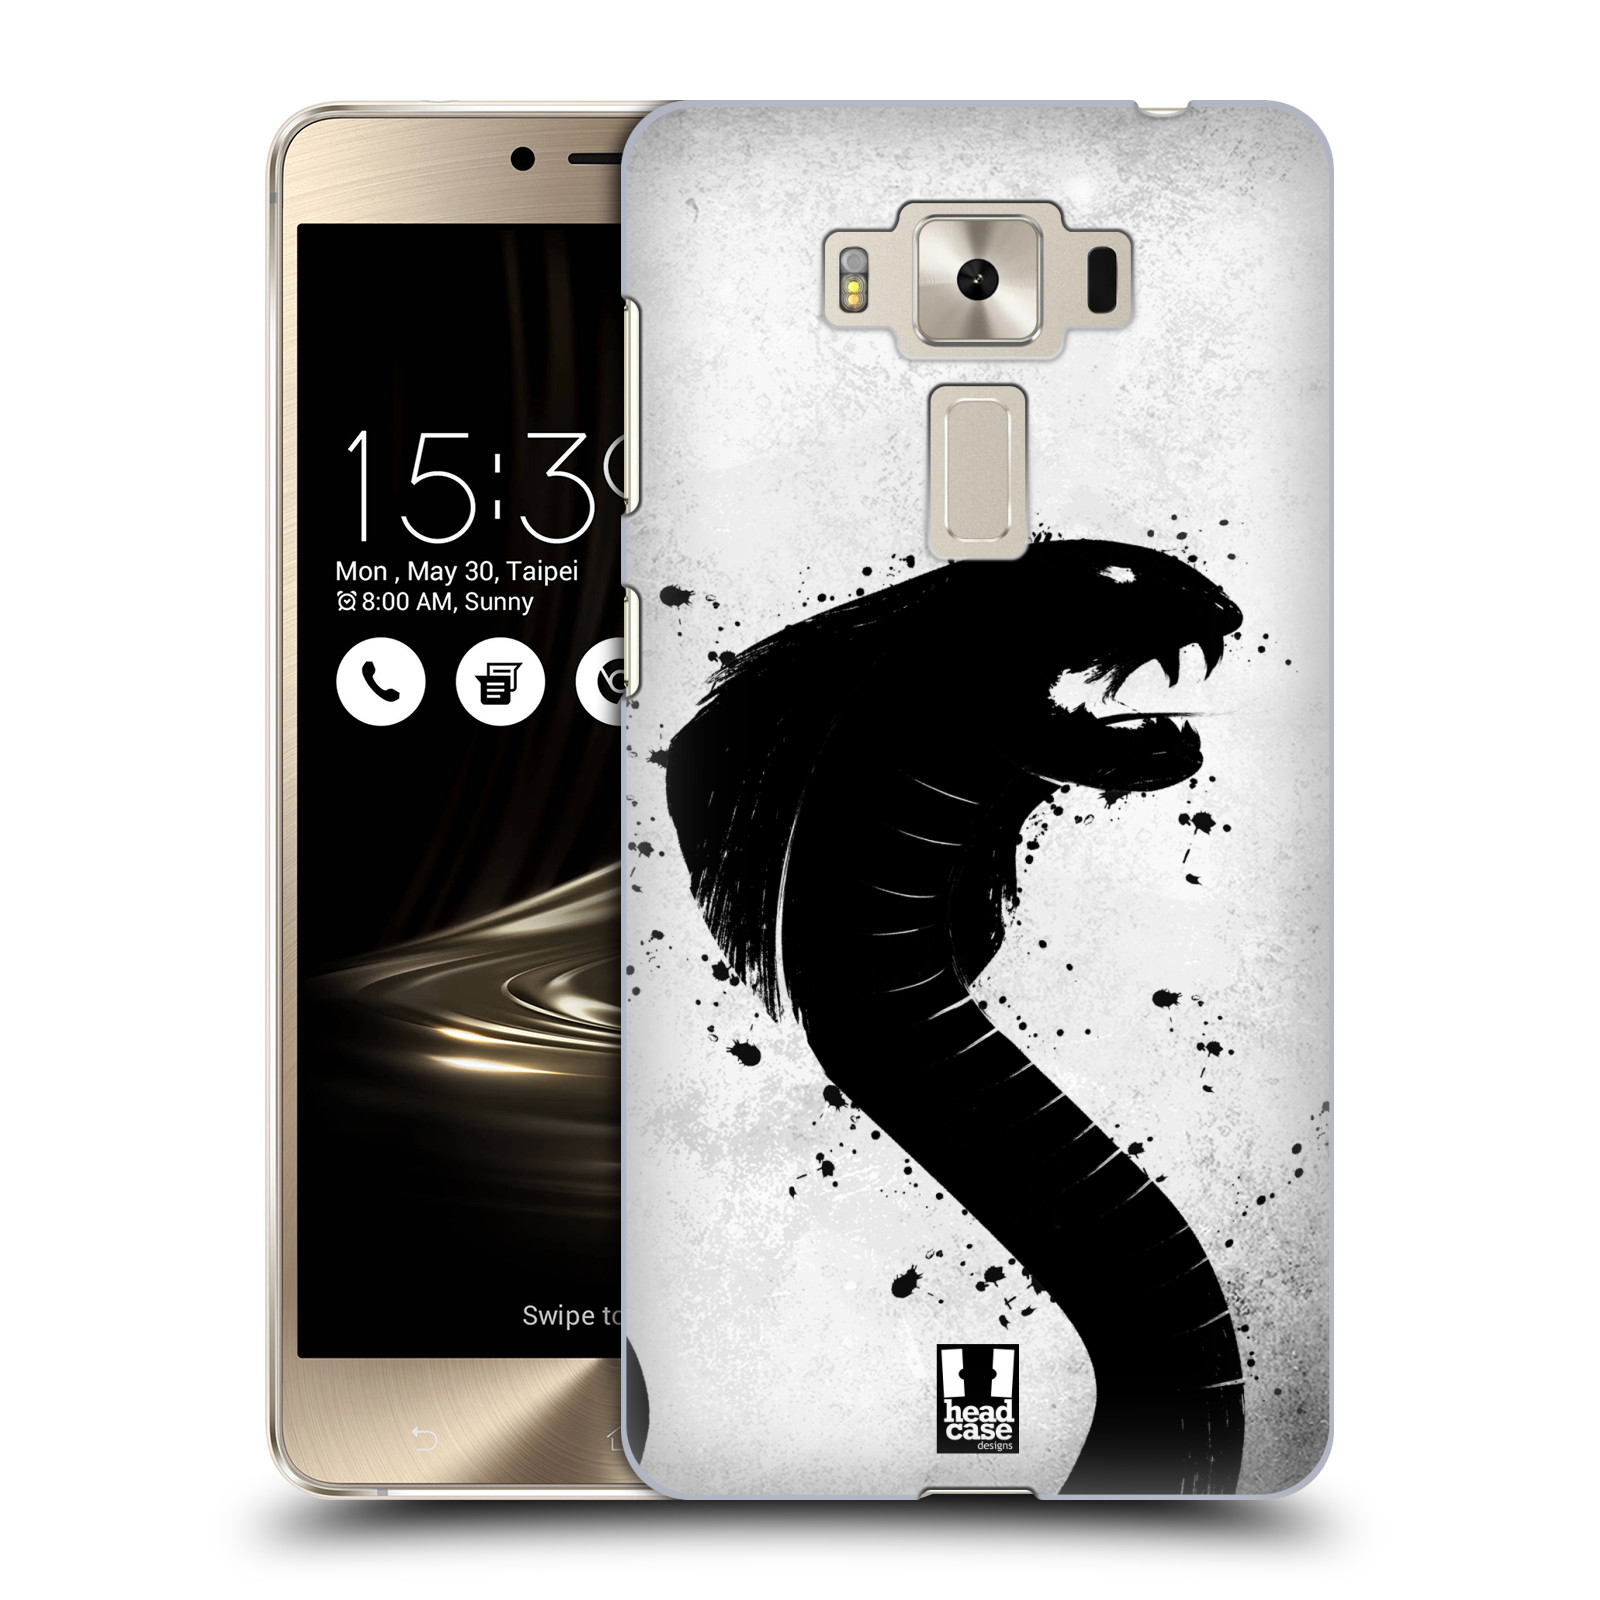 HEAD CASE plastový obal na mobil Asus Zenfone 3 DELUXE ZS550KL vzor Kresba tuš zvíře had kobra